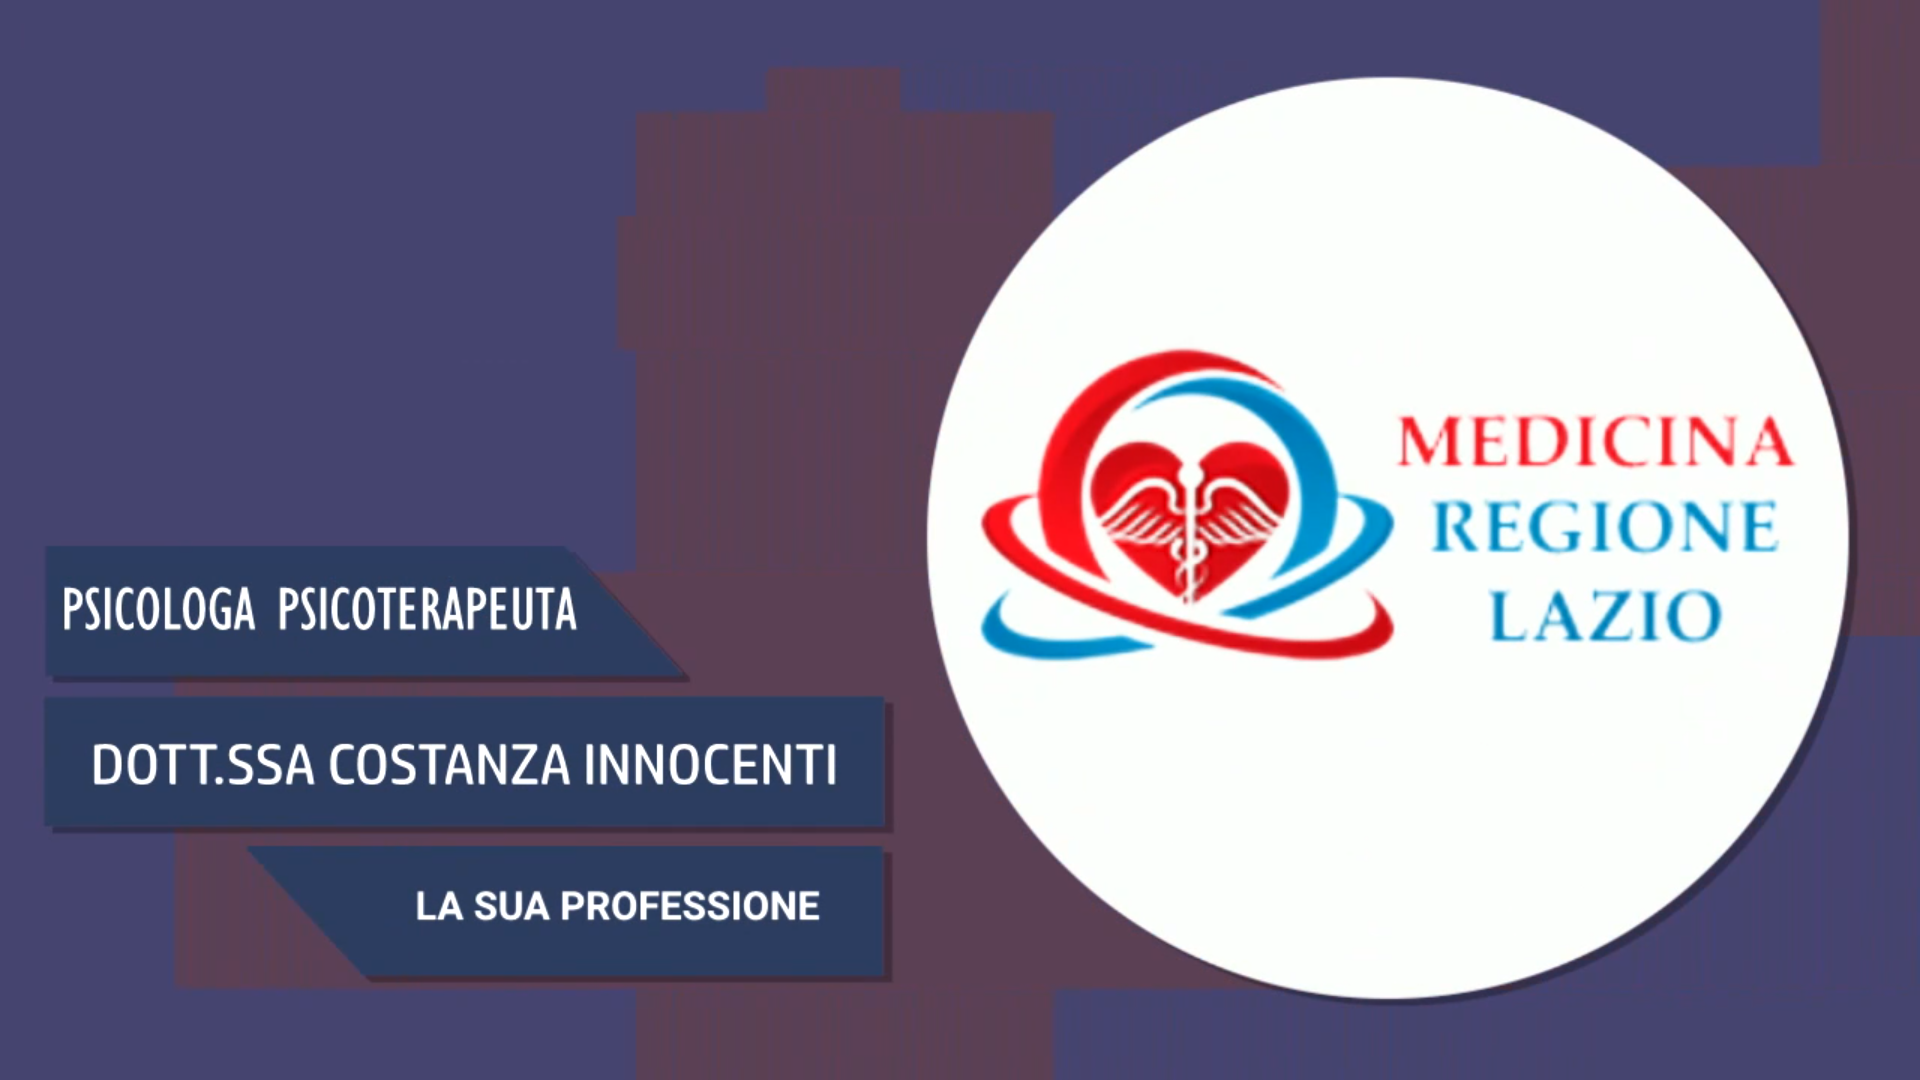 Intervista alla Dott.ssa Costanza Innocenti – La sua professione